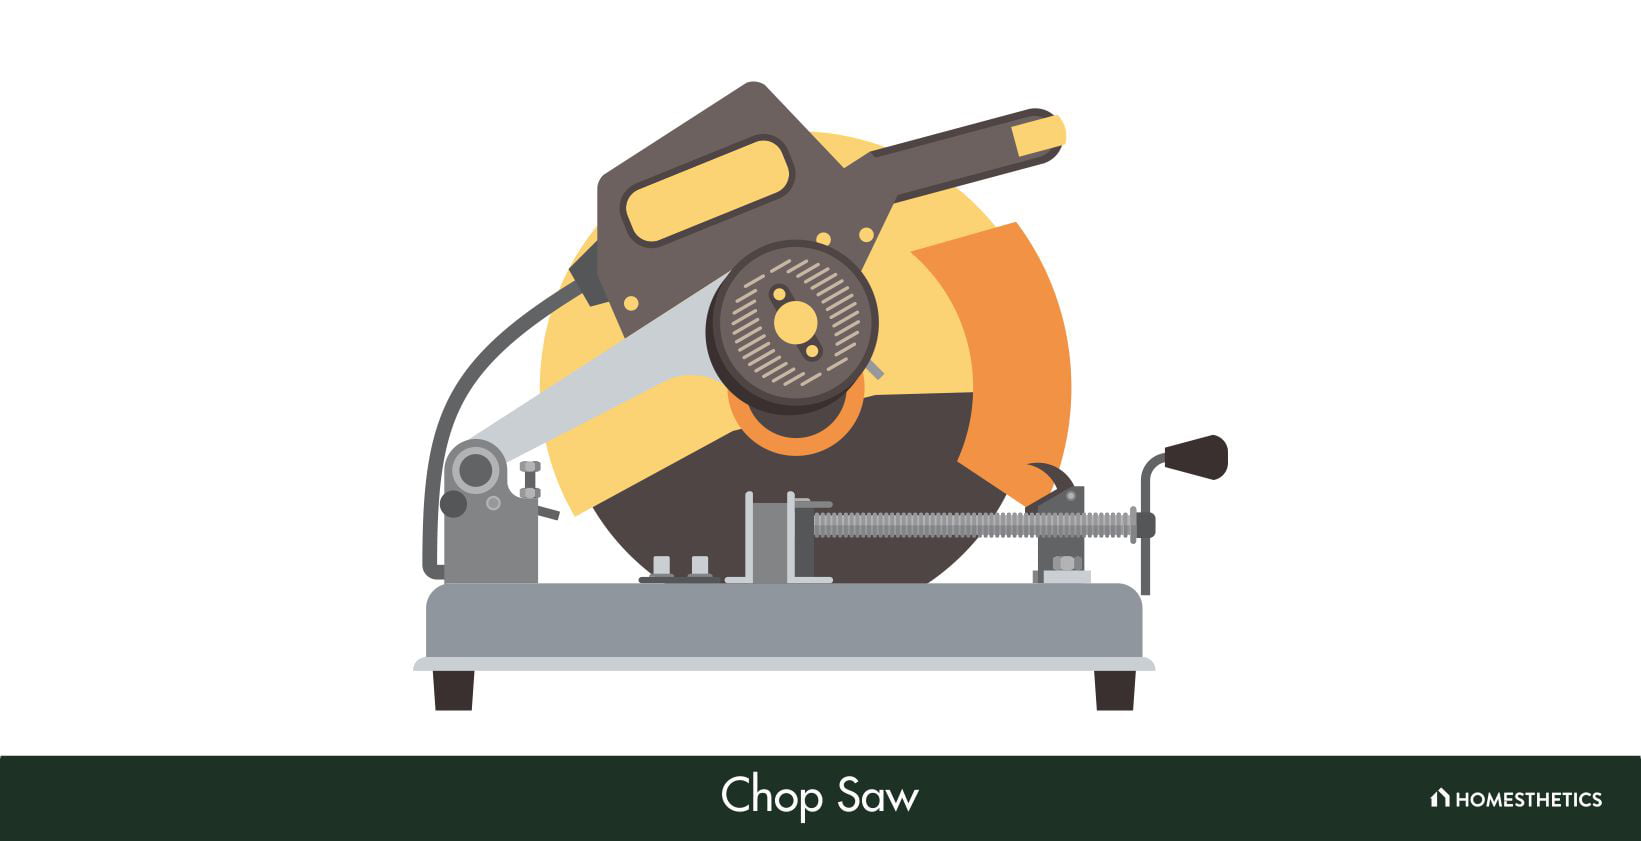 Chop Saw